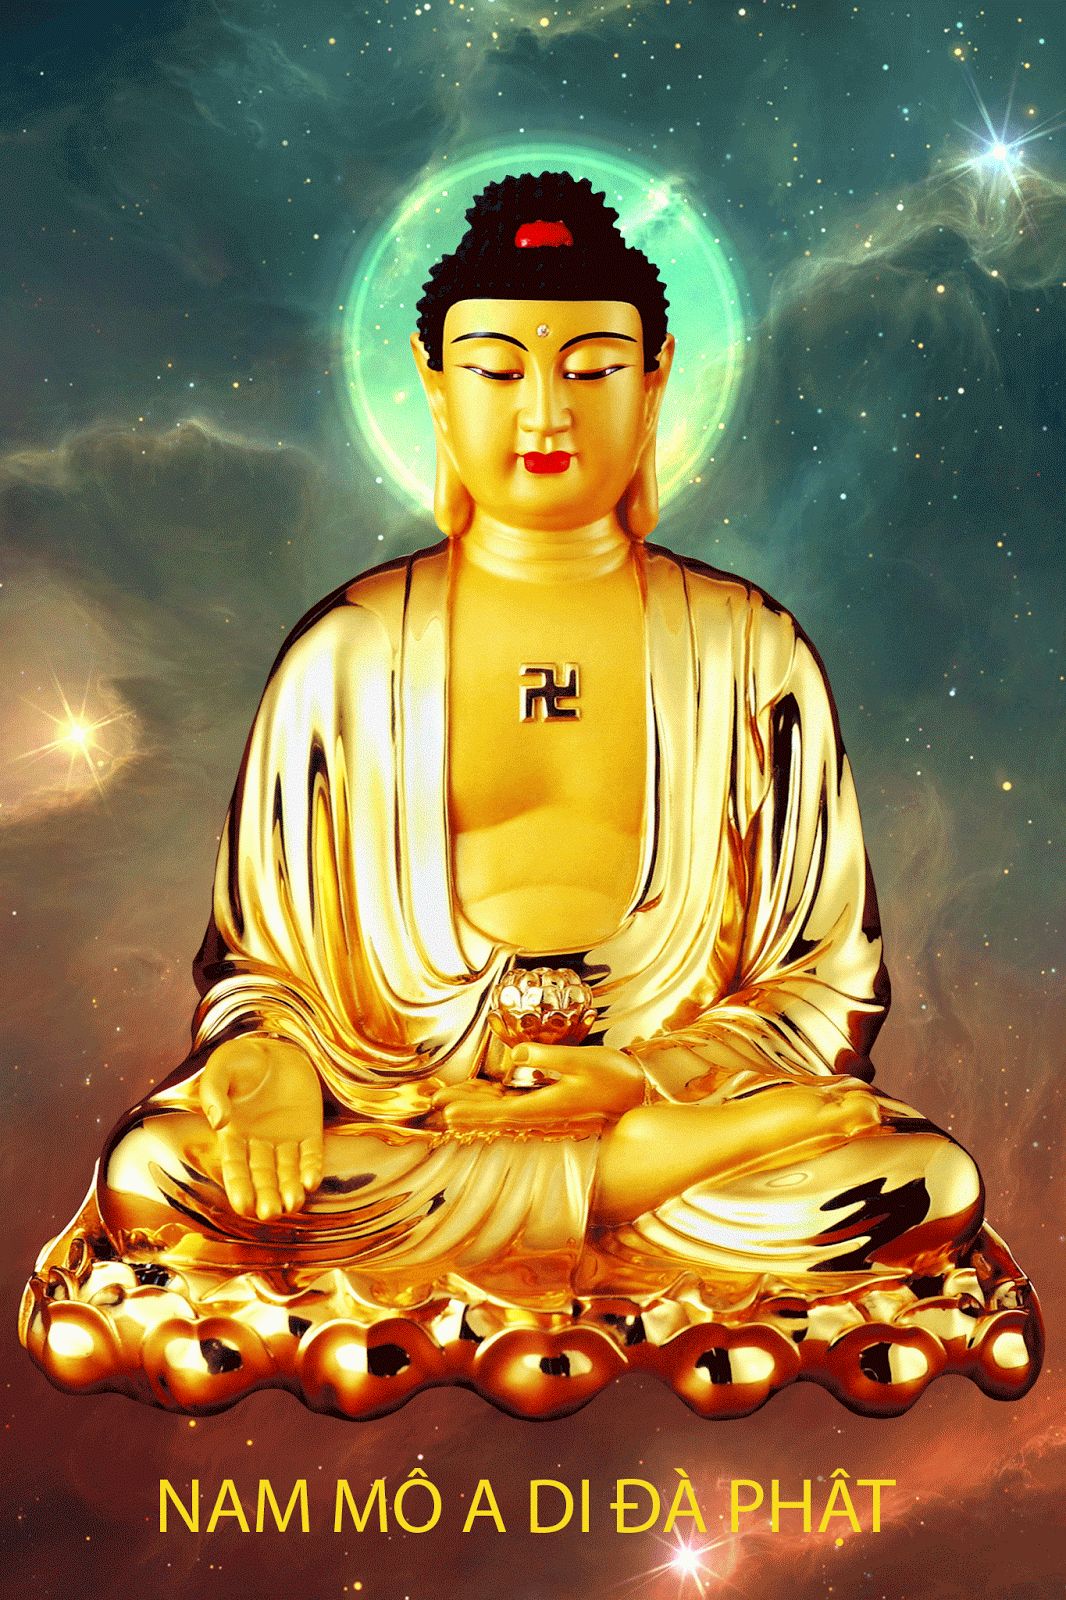 Avatar mừng lễ Phật Thích Ca Thành Đạo 812Âm Lịch  Phật Giáo Đà Nẵng   Phật Giáo Đà Nẵng